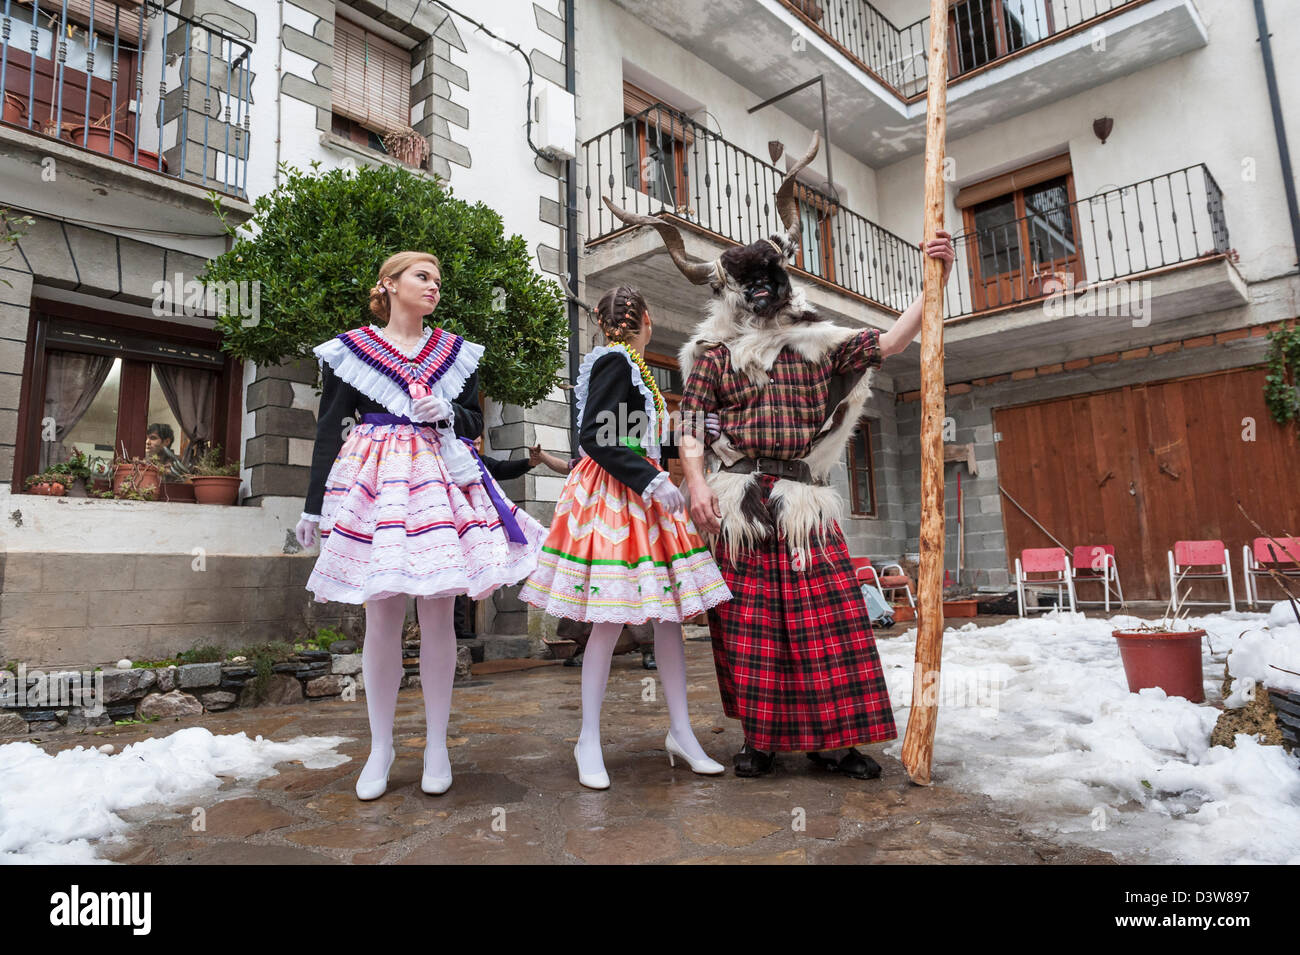 Madamas attendant l'trangas pour aller au bal sur la place principale. Carnaval de Benasque, Huesca, Espagne Banque D'Images